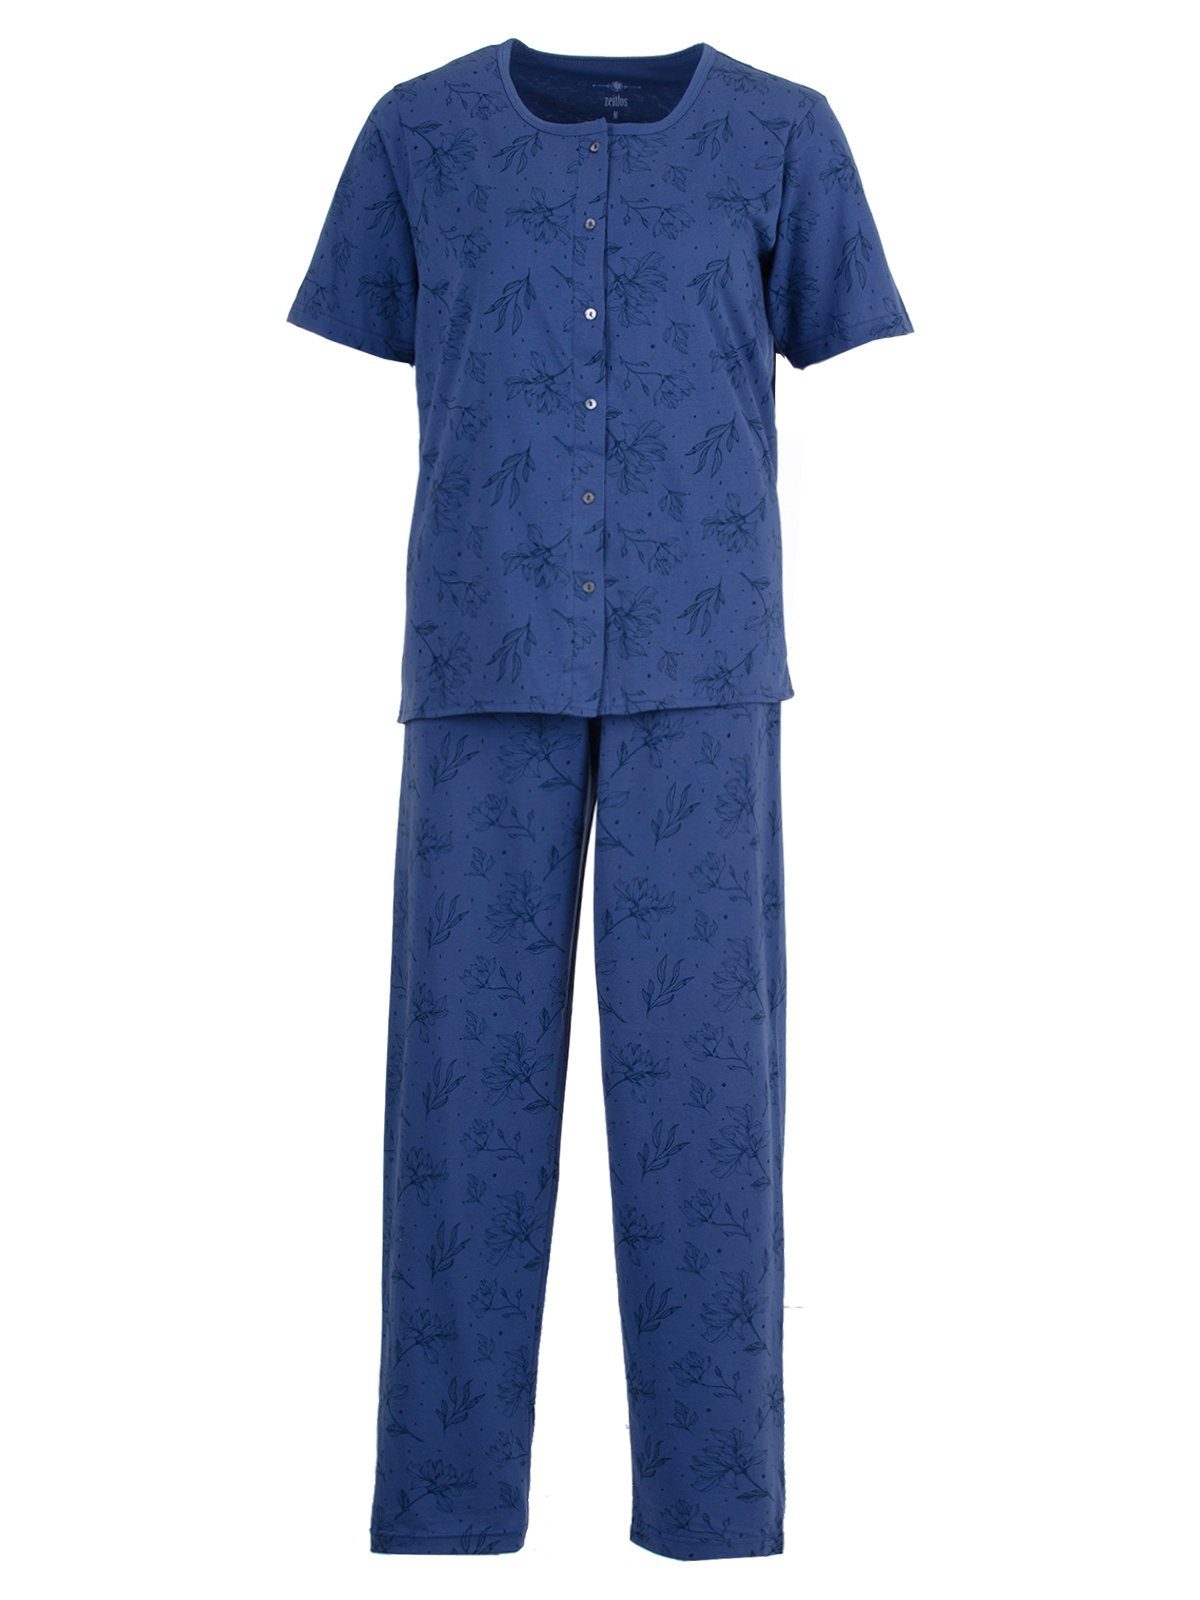 Floral - Kurzarm zeitlos blau Set Pyjama Schlafanzug